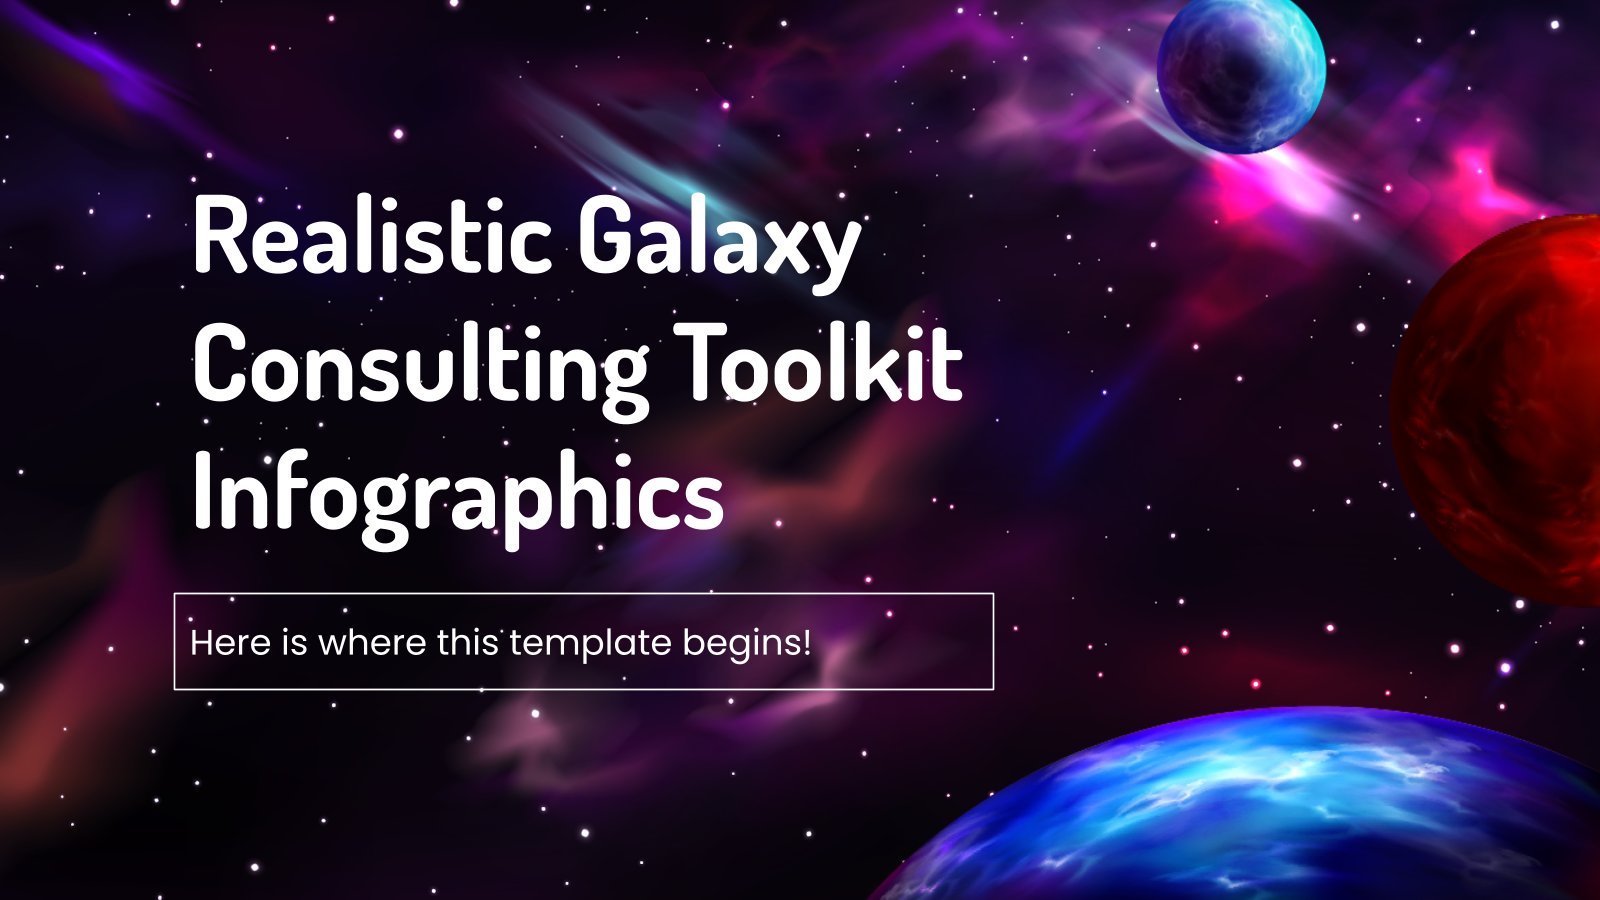 Modelo de apresentação Infográficos para kit de ferramentas de consultoria galáctica realista